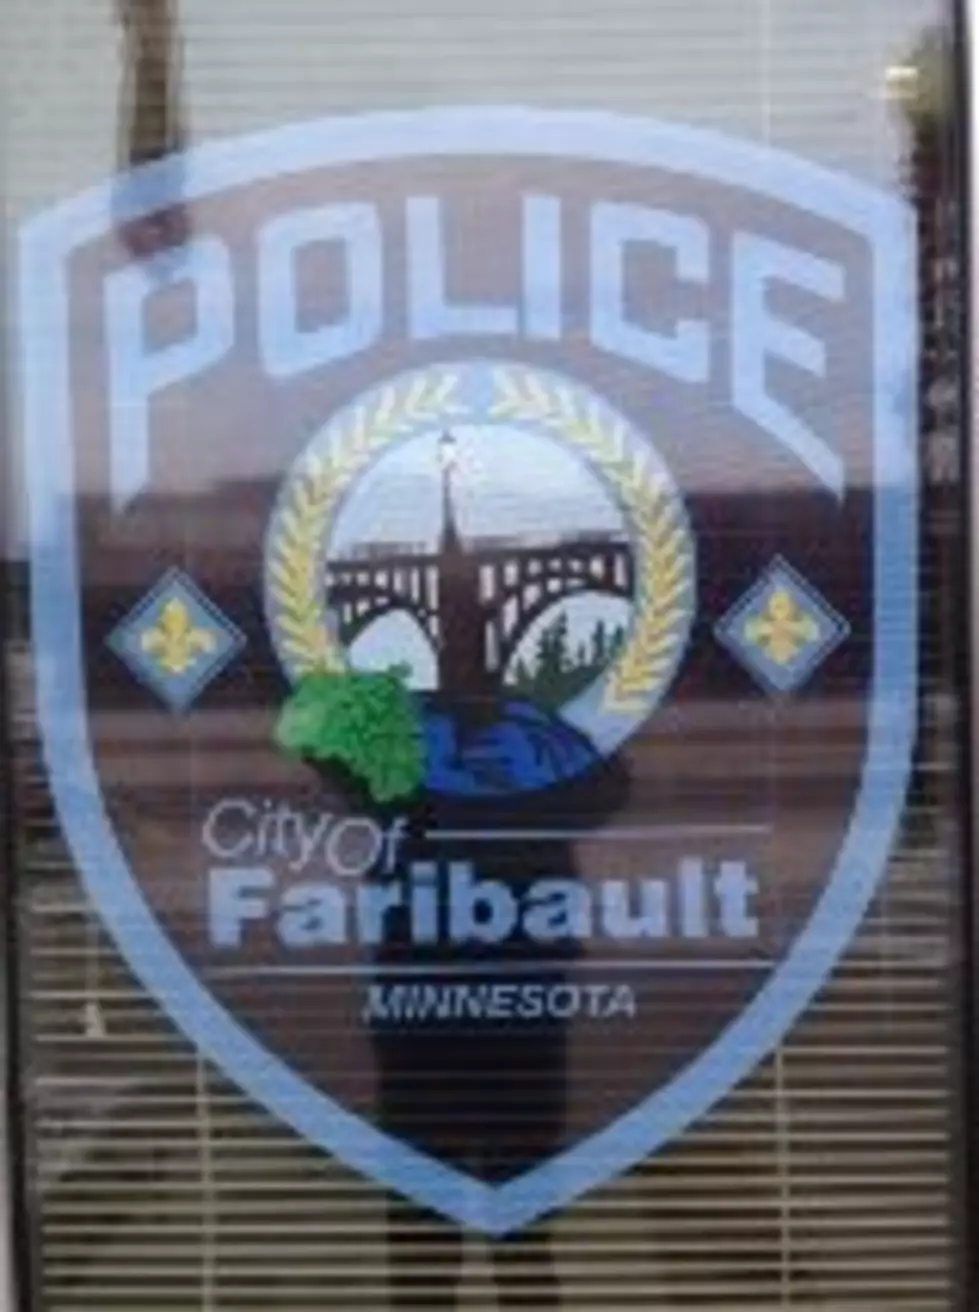 Body Identified in Faribault